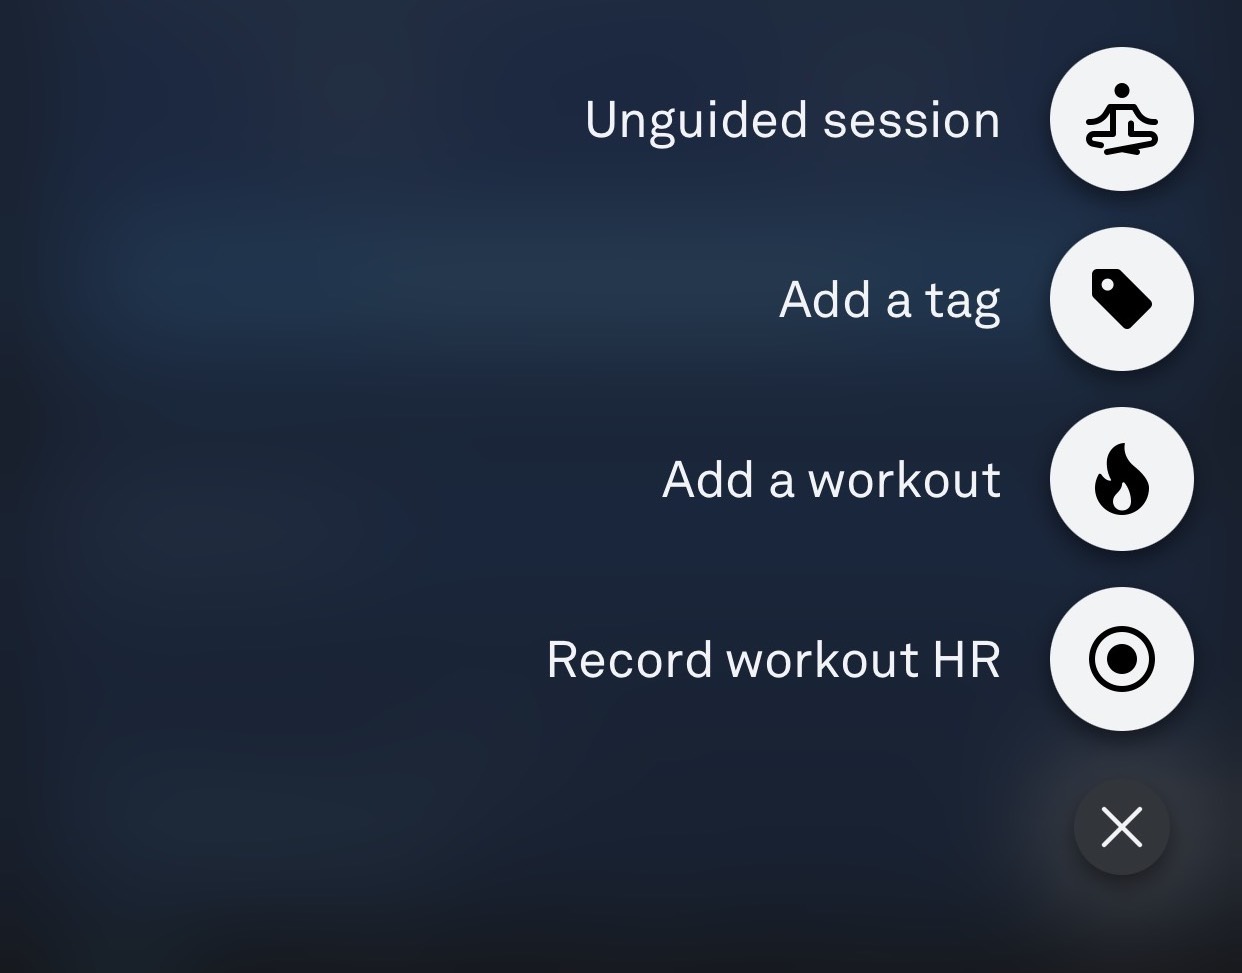 Ouraアプリの右下にある＋ボタンを押した場合に表示されるアクションメニュー。 4つのメニューオプションは、ガイドなしセッション、タグを追加、ワークアウトを追加、ワークアウト心拍数を記録です。